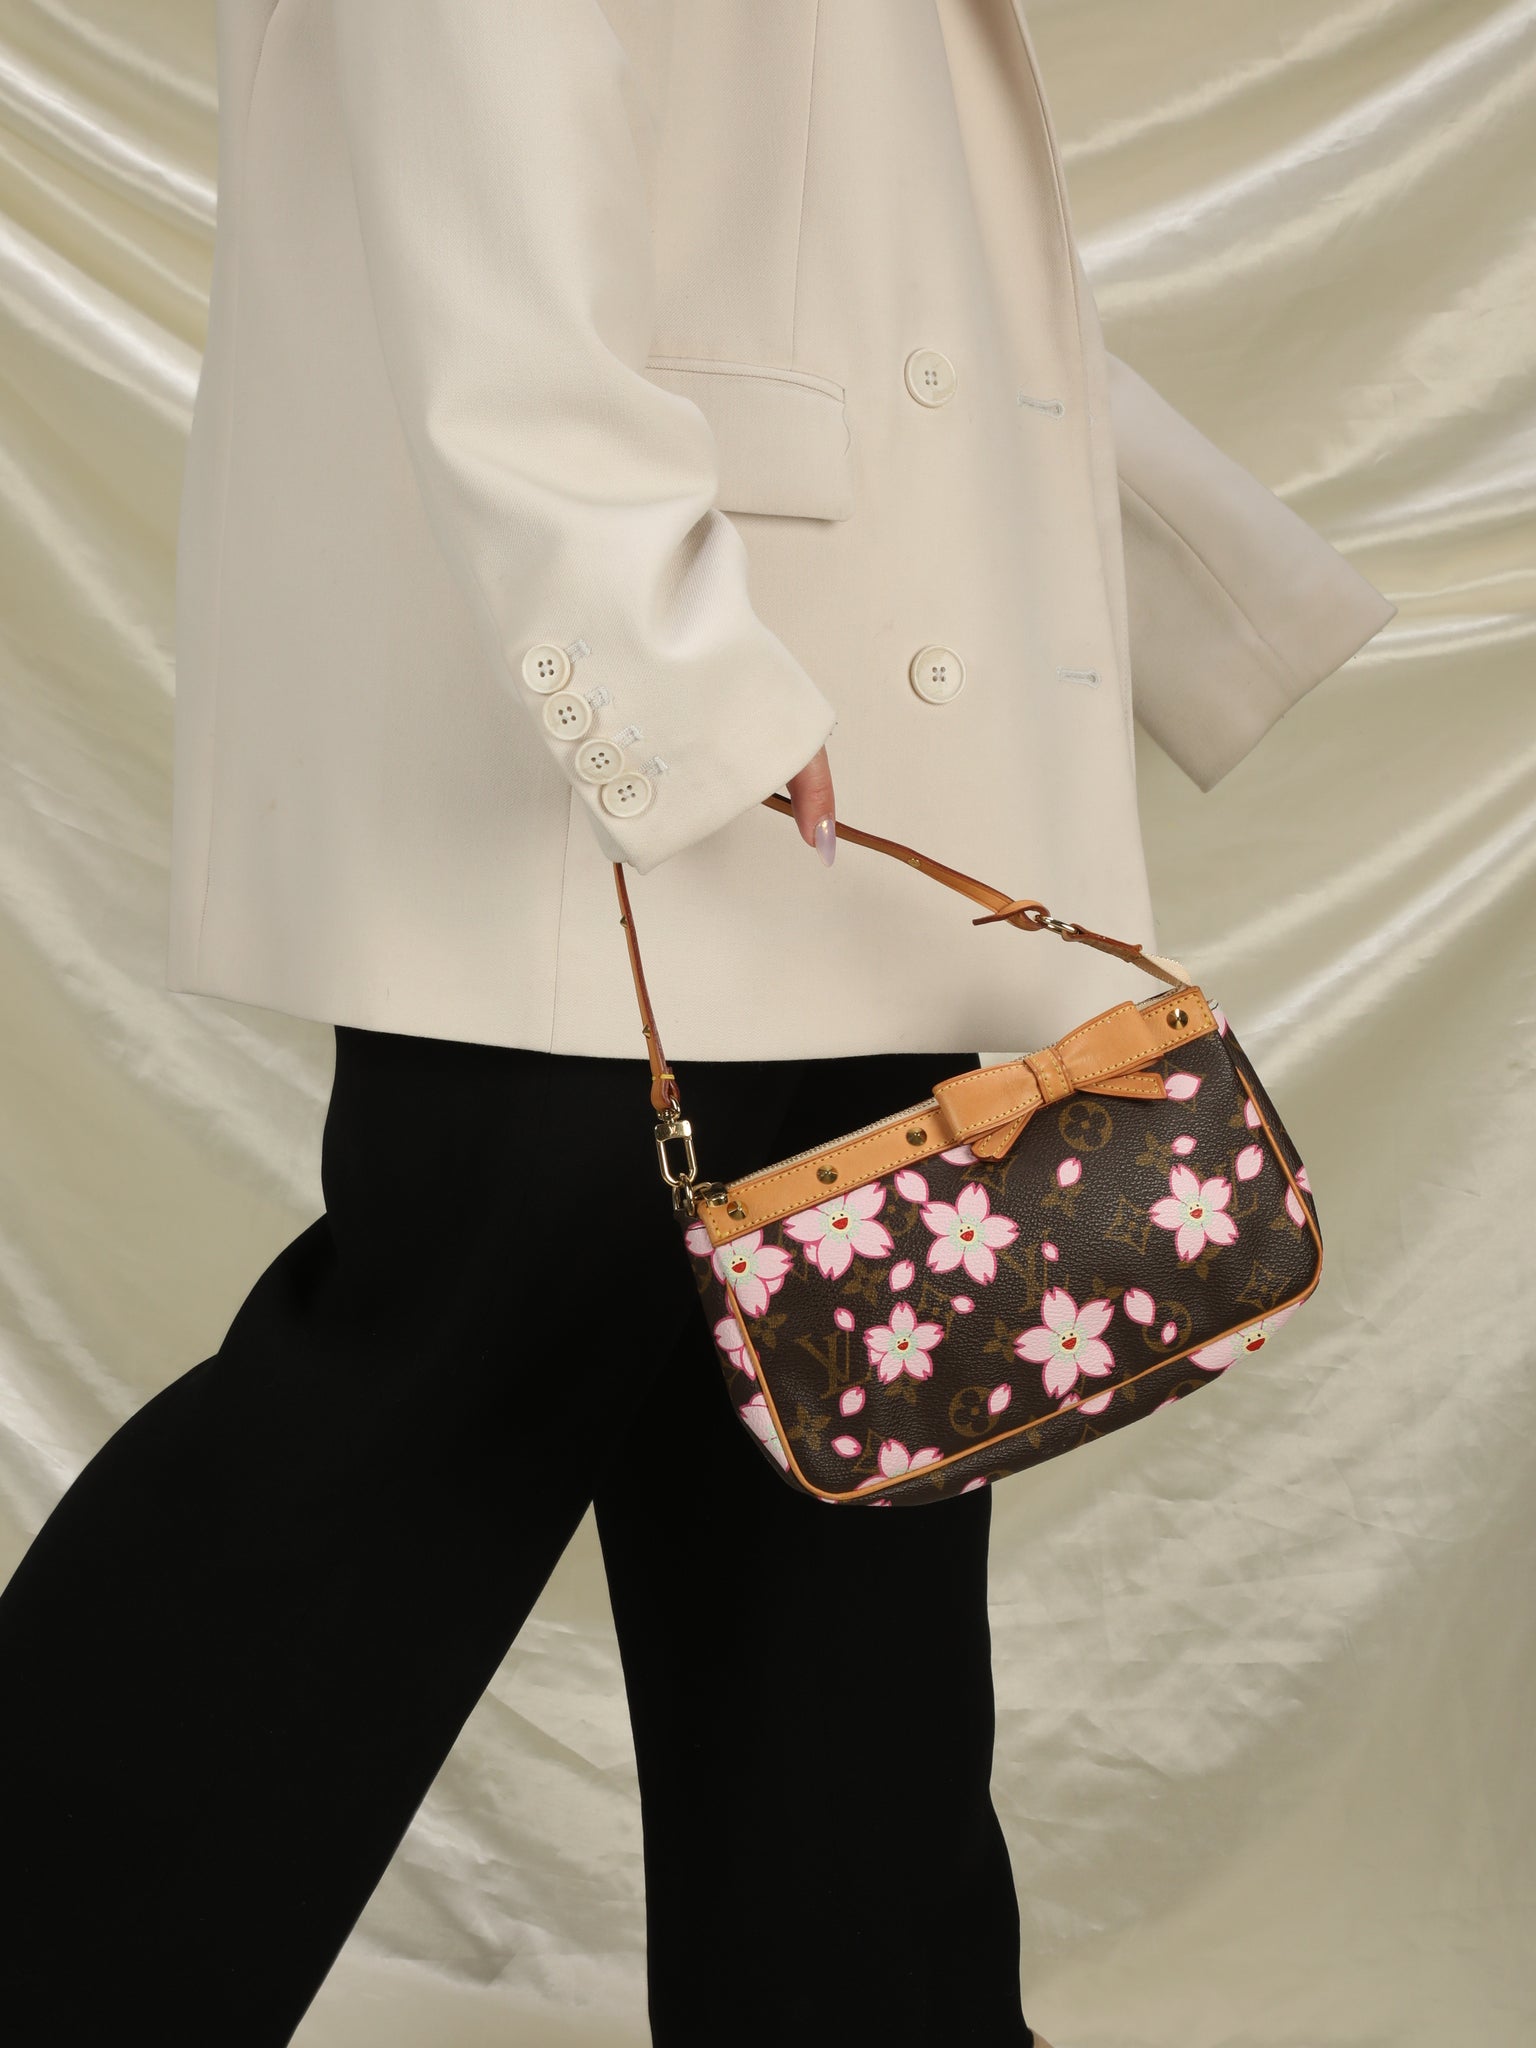 LOUIS VUITTON Takashi Murakami Monogram Cherry Blossom Pochette Accessoire  Bag